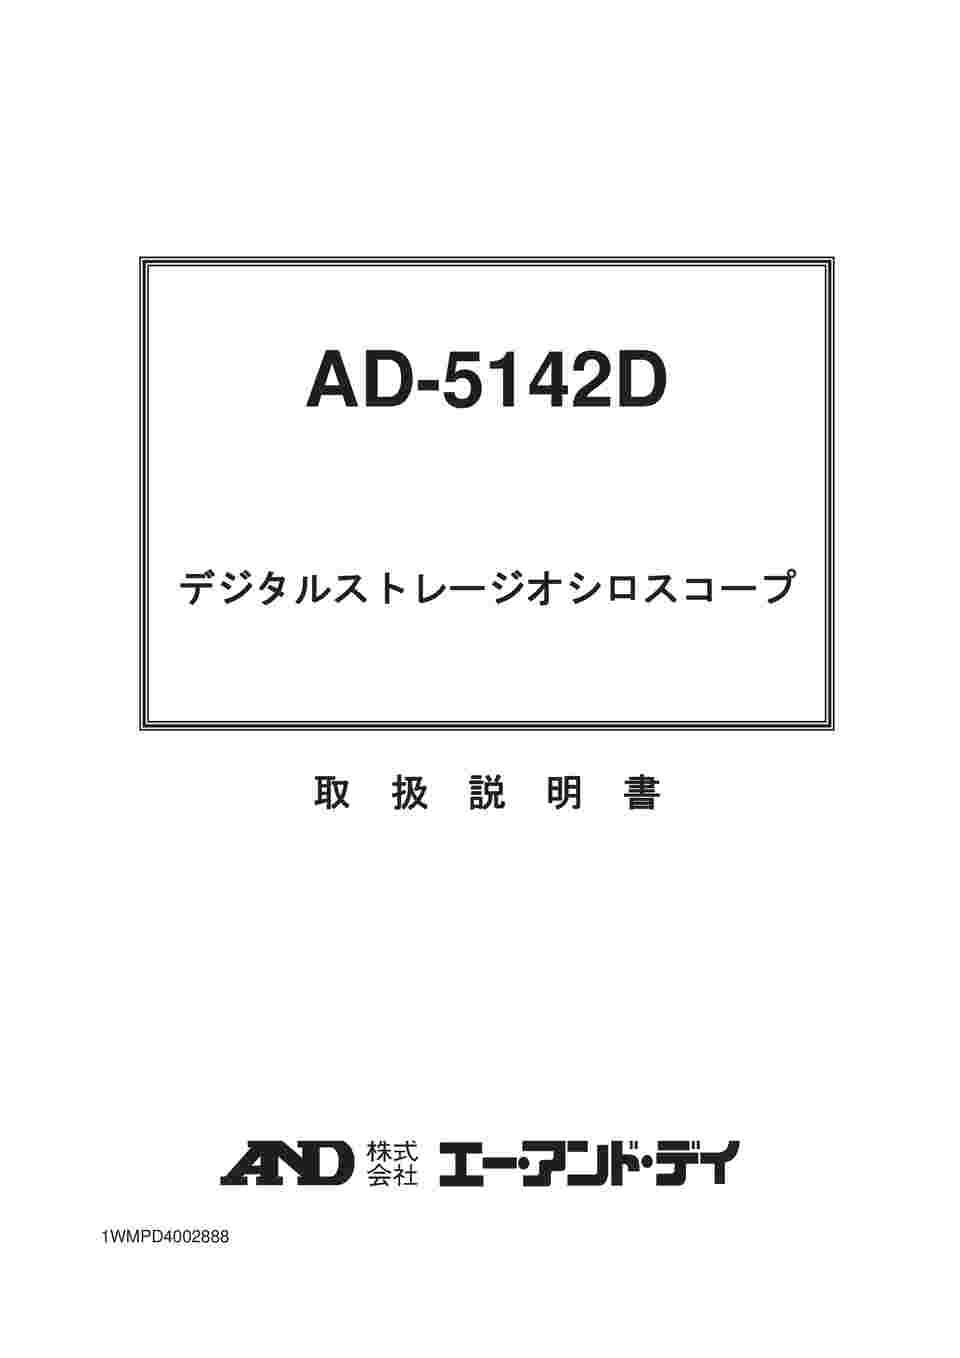 AD エー アンド デイ AD-5142D オシロスコープ